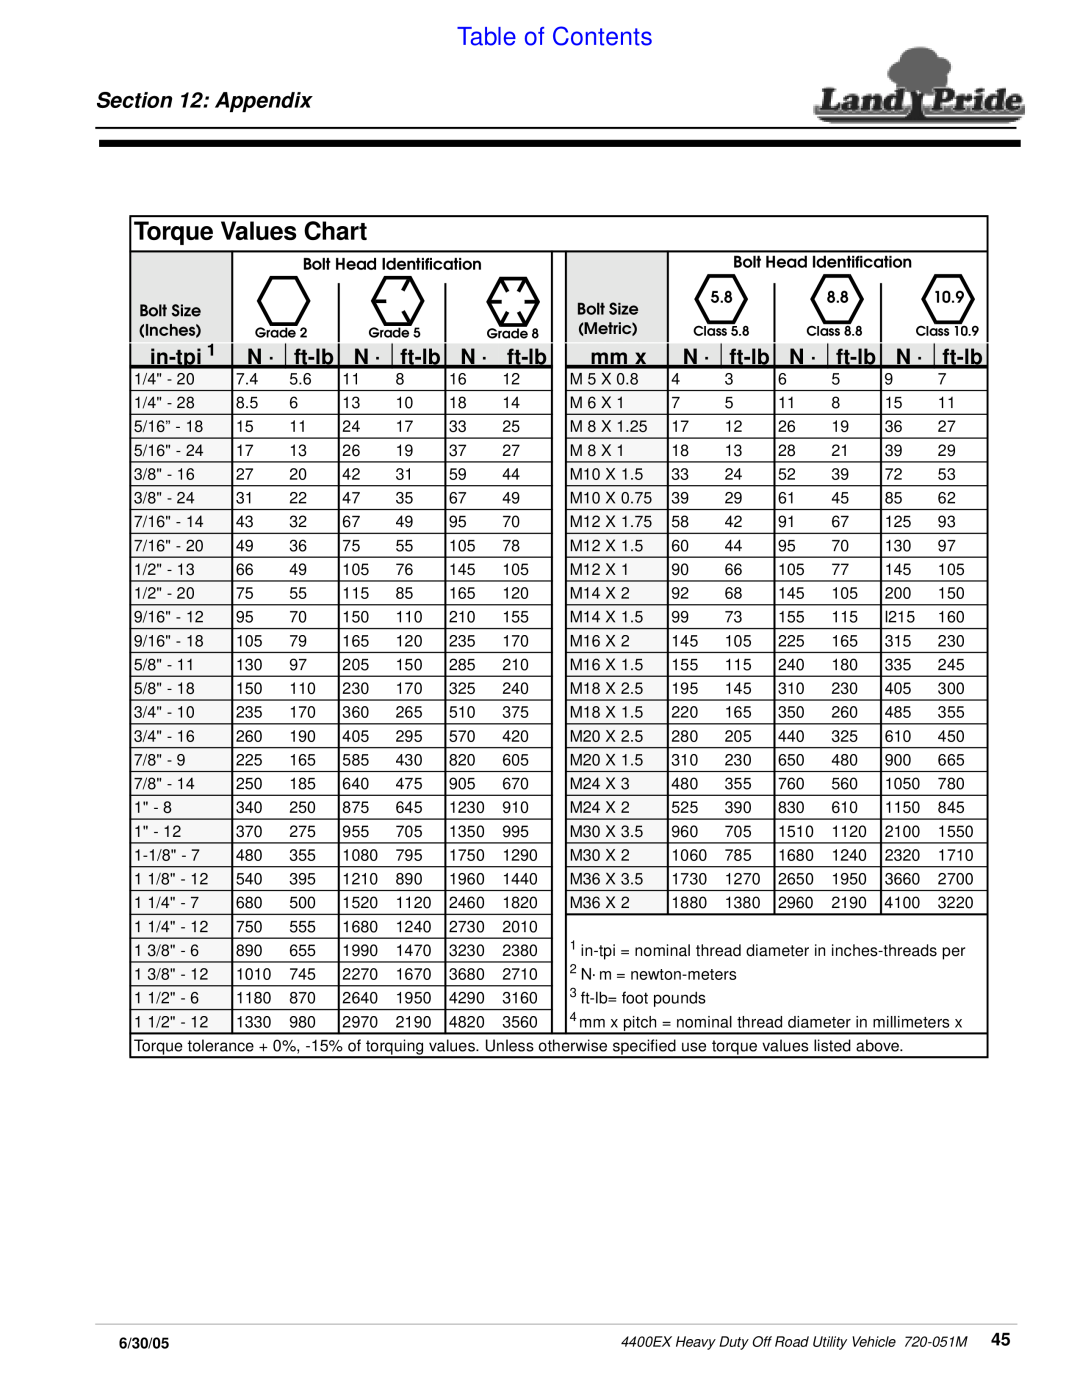 Land Pride 4400ex manual Torque Values Chart, Appendix, in-tpi, ft-lb, Table of Contents 